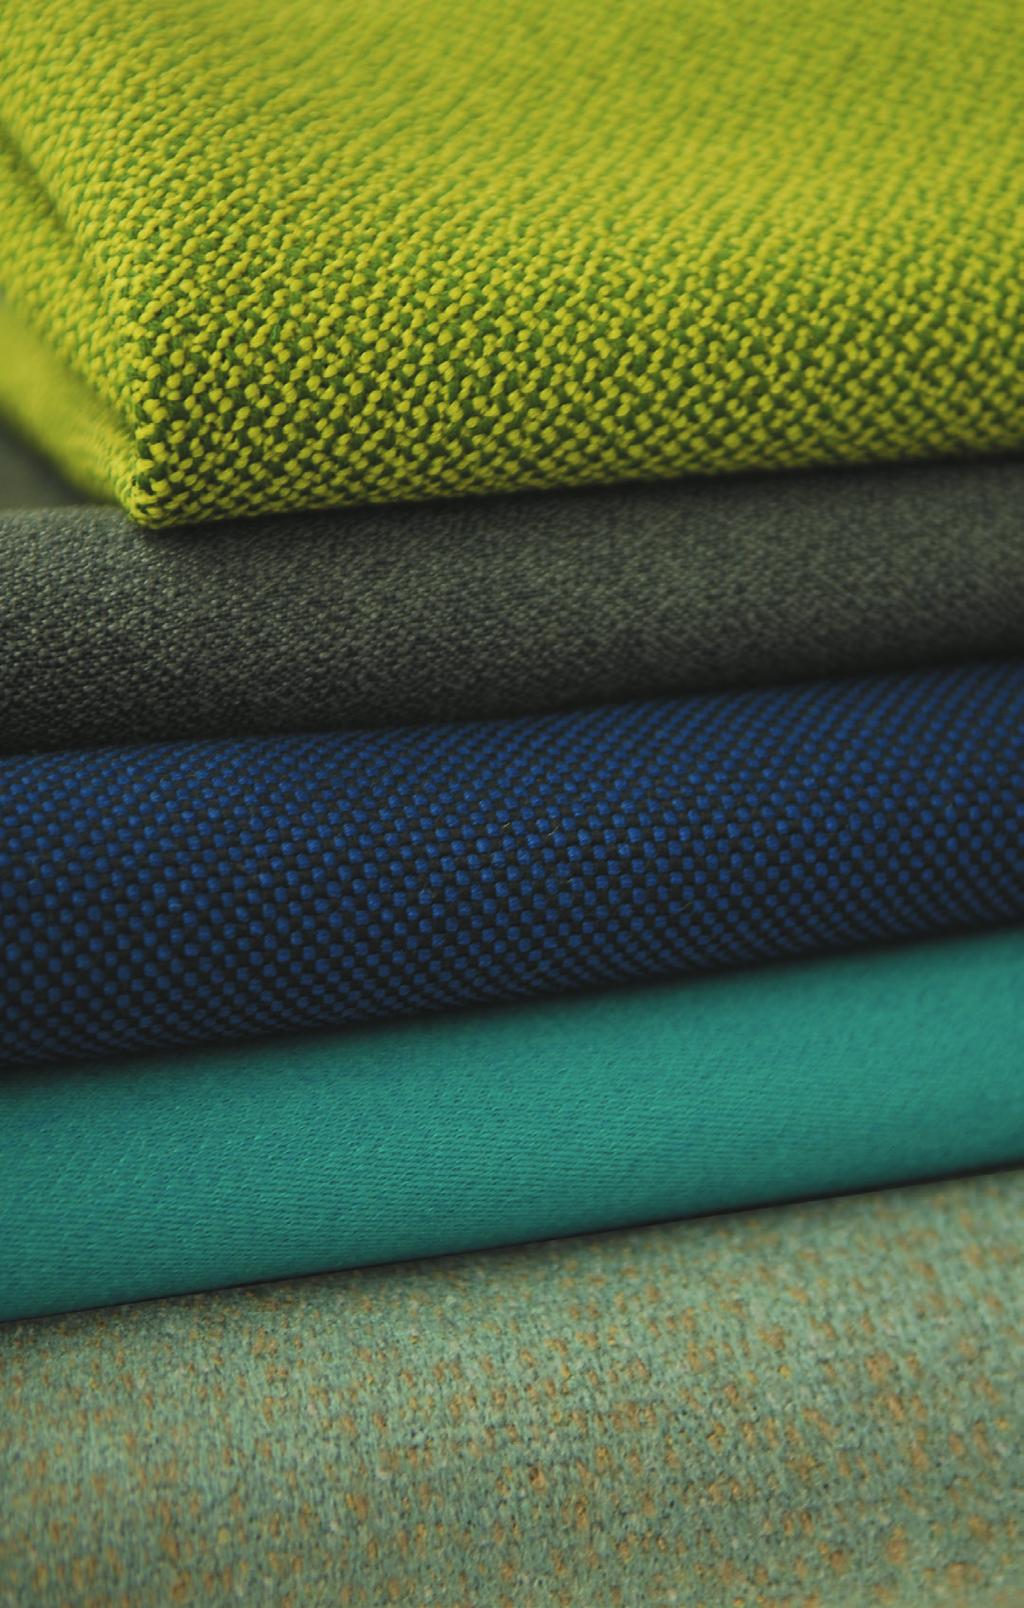 Gewebebeschreibung Description of fabrics CREDO Material: 95% Schurwolle, 5% Polyamid Gewicht ca.: 640 g/m² 900 g/lm Breite ca.: 140 cm Scheuerfestigkeit: 110.